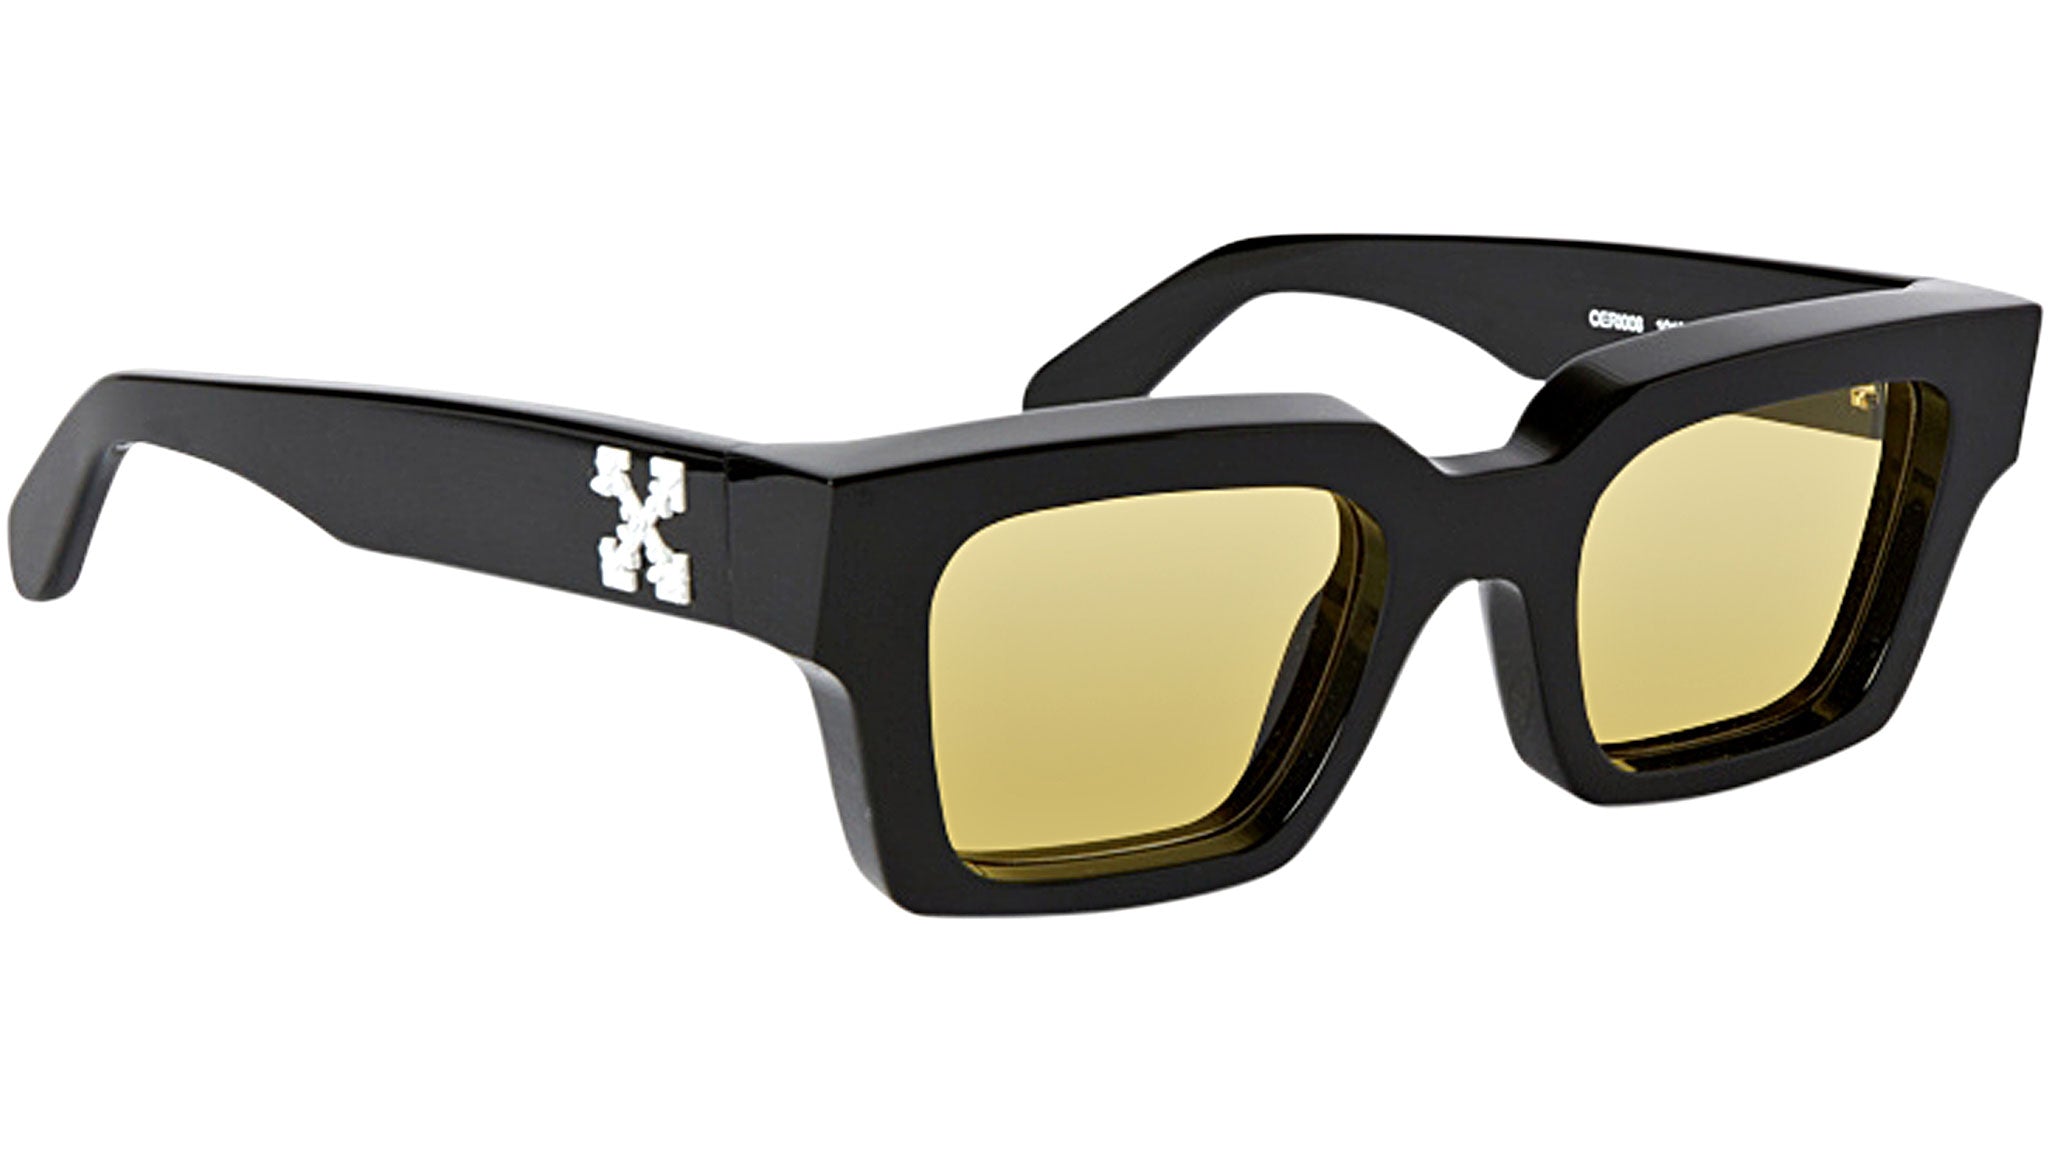 Off-white VIRGIL BLACK sunglasses